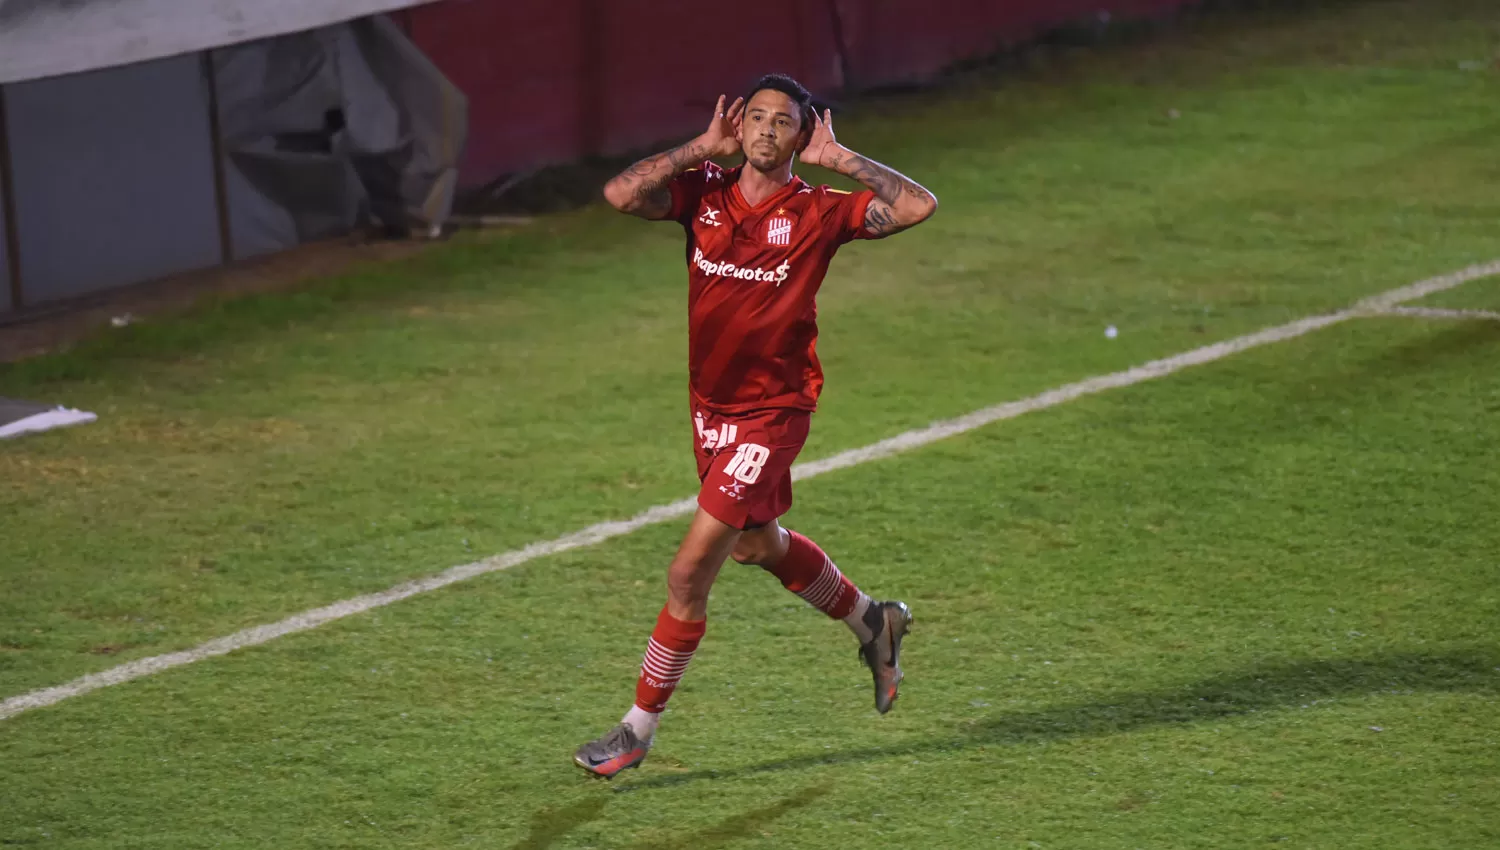 EL TERCERO. Daniel González emuló al Topo Gigio en el festejo de su primer gol con la camiseta de San Martín.